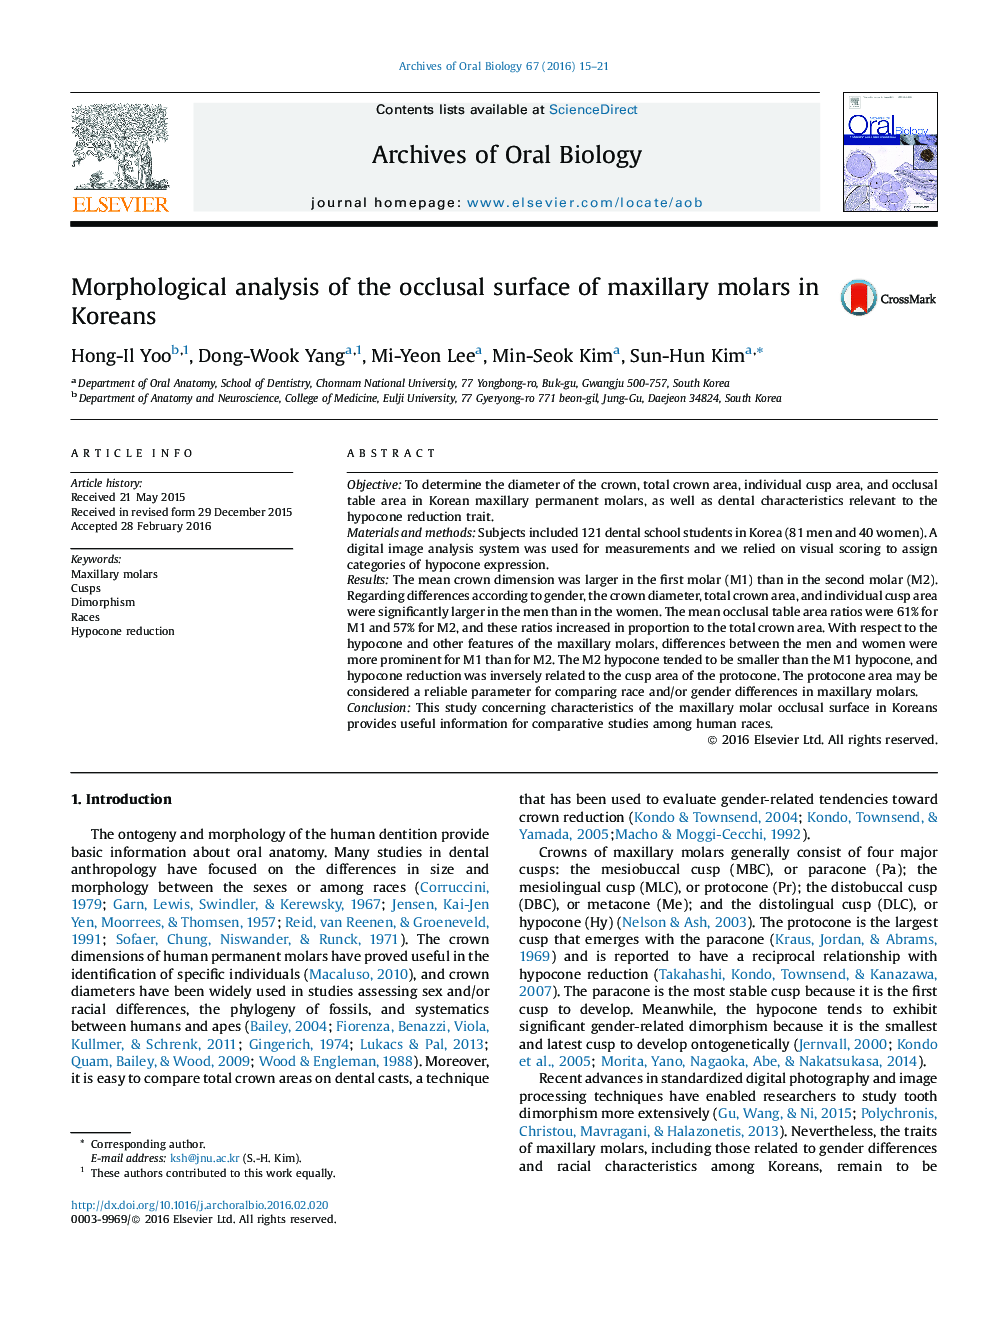 تجزیه و تحلیل مورفولوژیکی سطح اکلوزال مولر ماگزیلاری در کره ای ها 